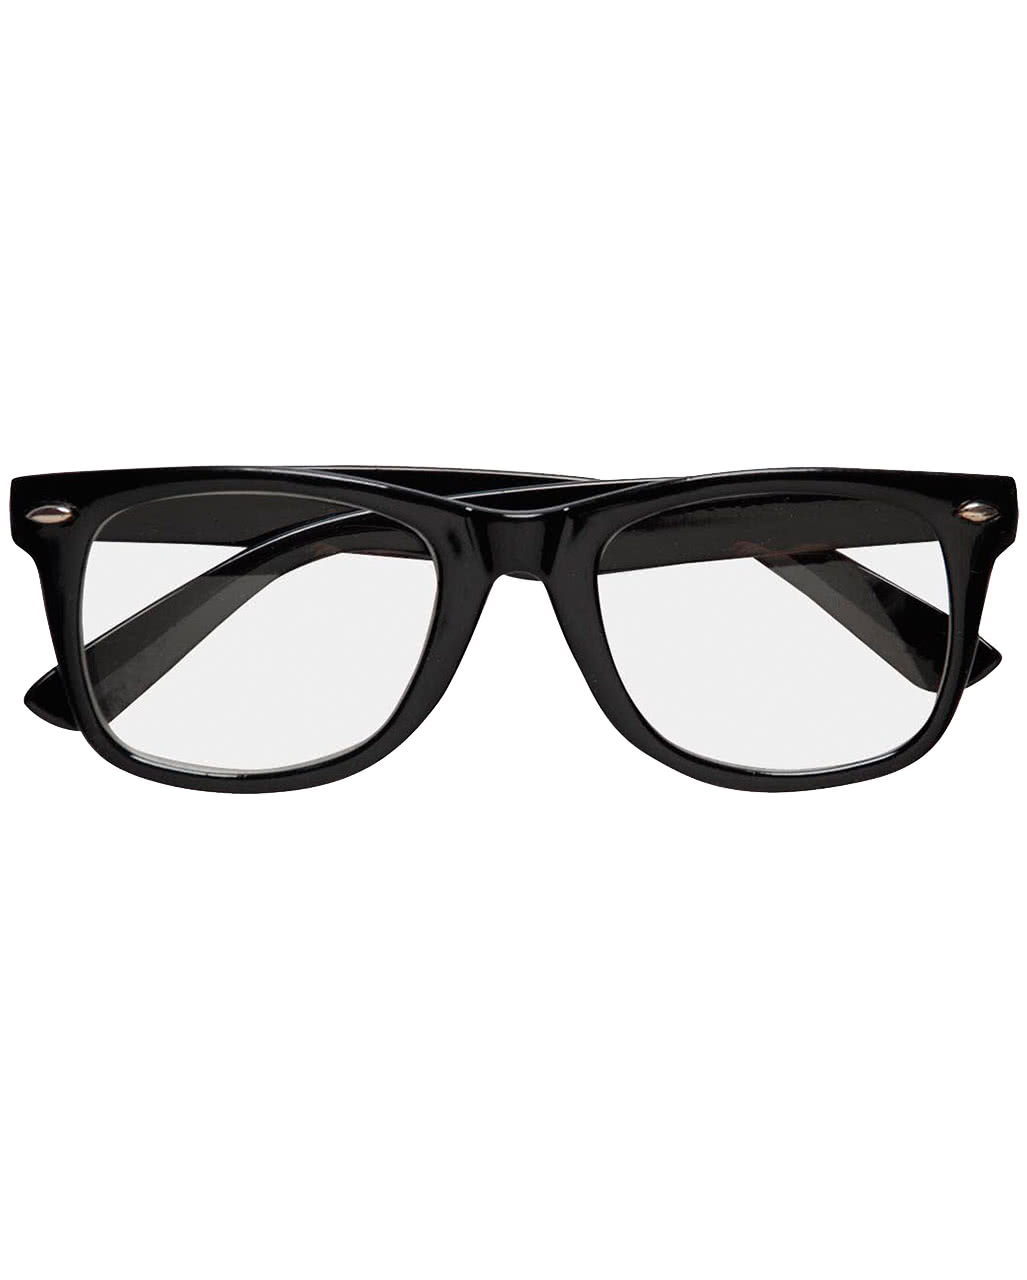 Nerd Brille Nerdbrille ohne Stärke Geek Fensterglas modern Männer Frauen schwarz 